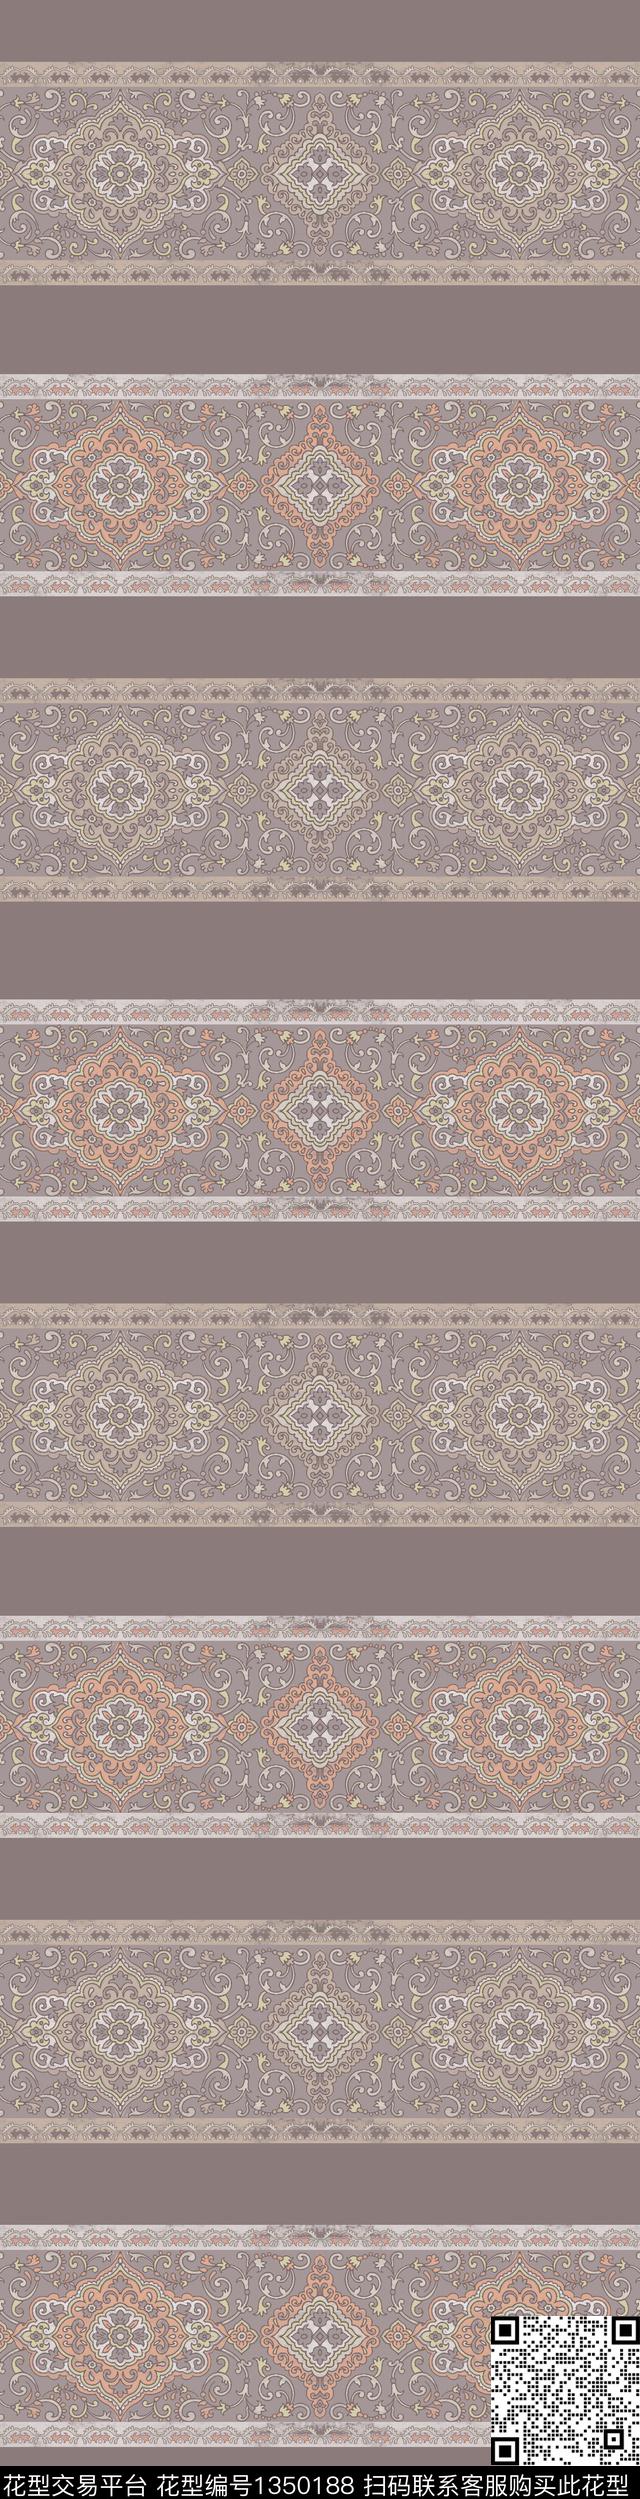 2020-8-15.jpg - 1350188 - 复古 民族风 - 传统印花花型 － 窗帘花型设计 － 瓦栏